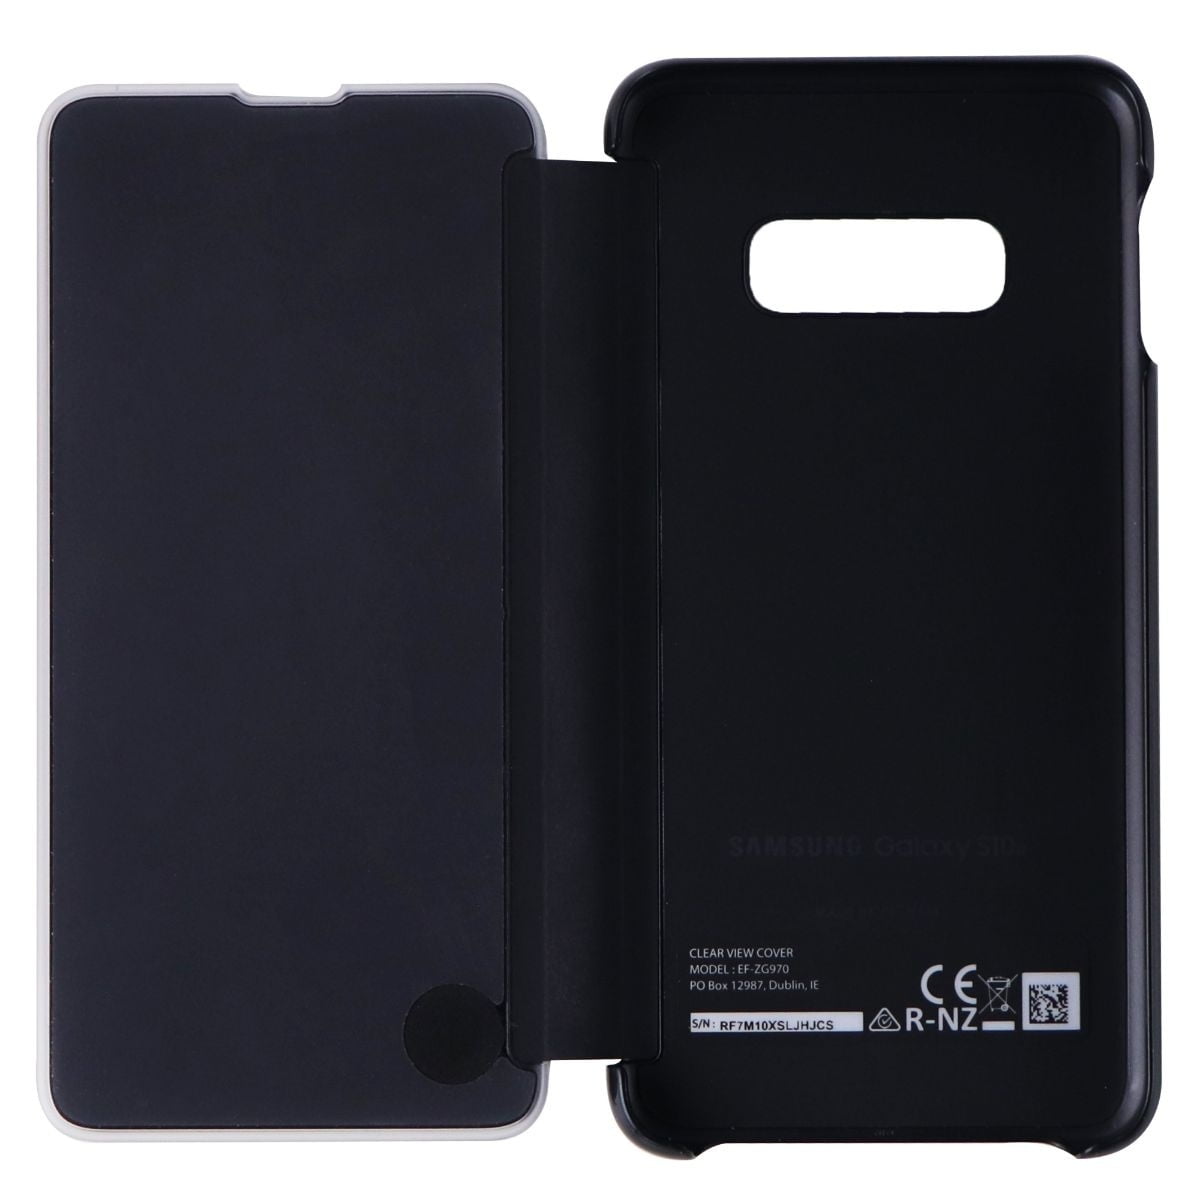 Samsung S View Flip Cover Case For Samsung Galaxy S10e Black Ef Zg970cbe Walmart Com Walmart Com